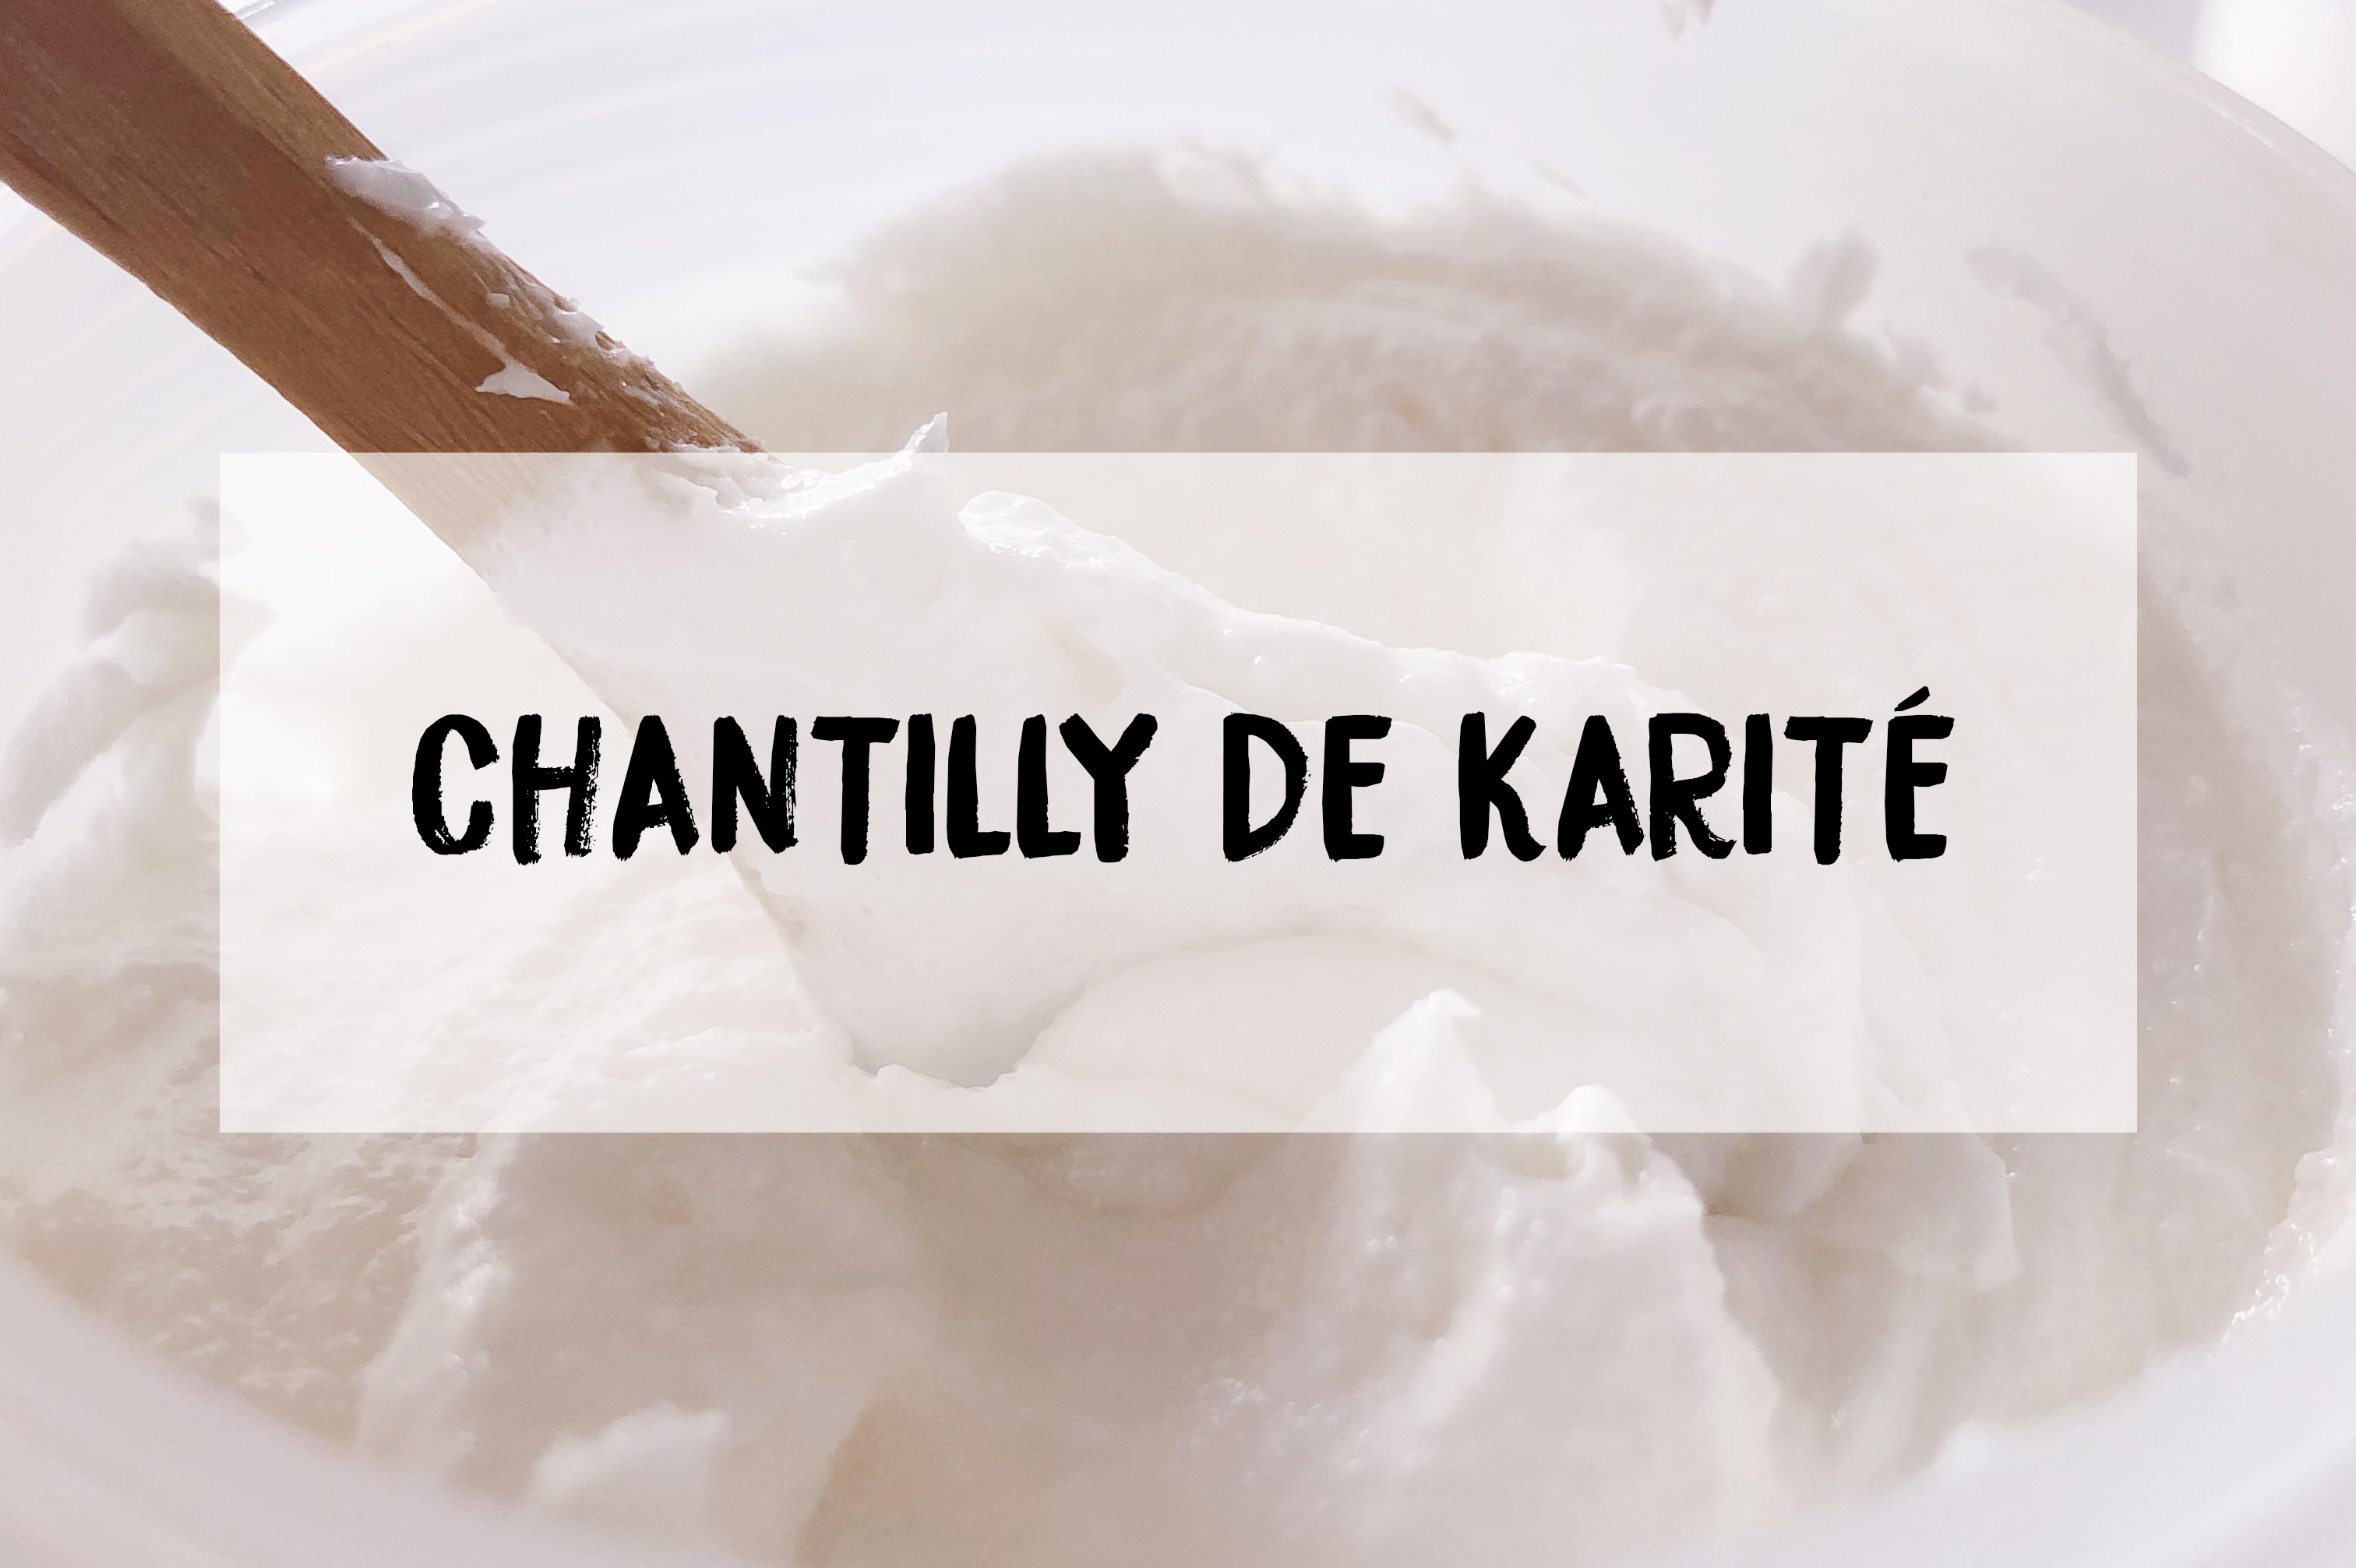 La chantilly de karité : recette personnalisable - madeinali